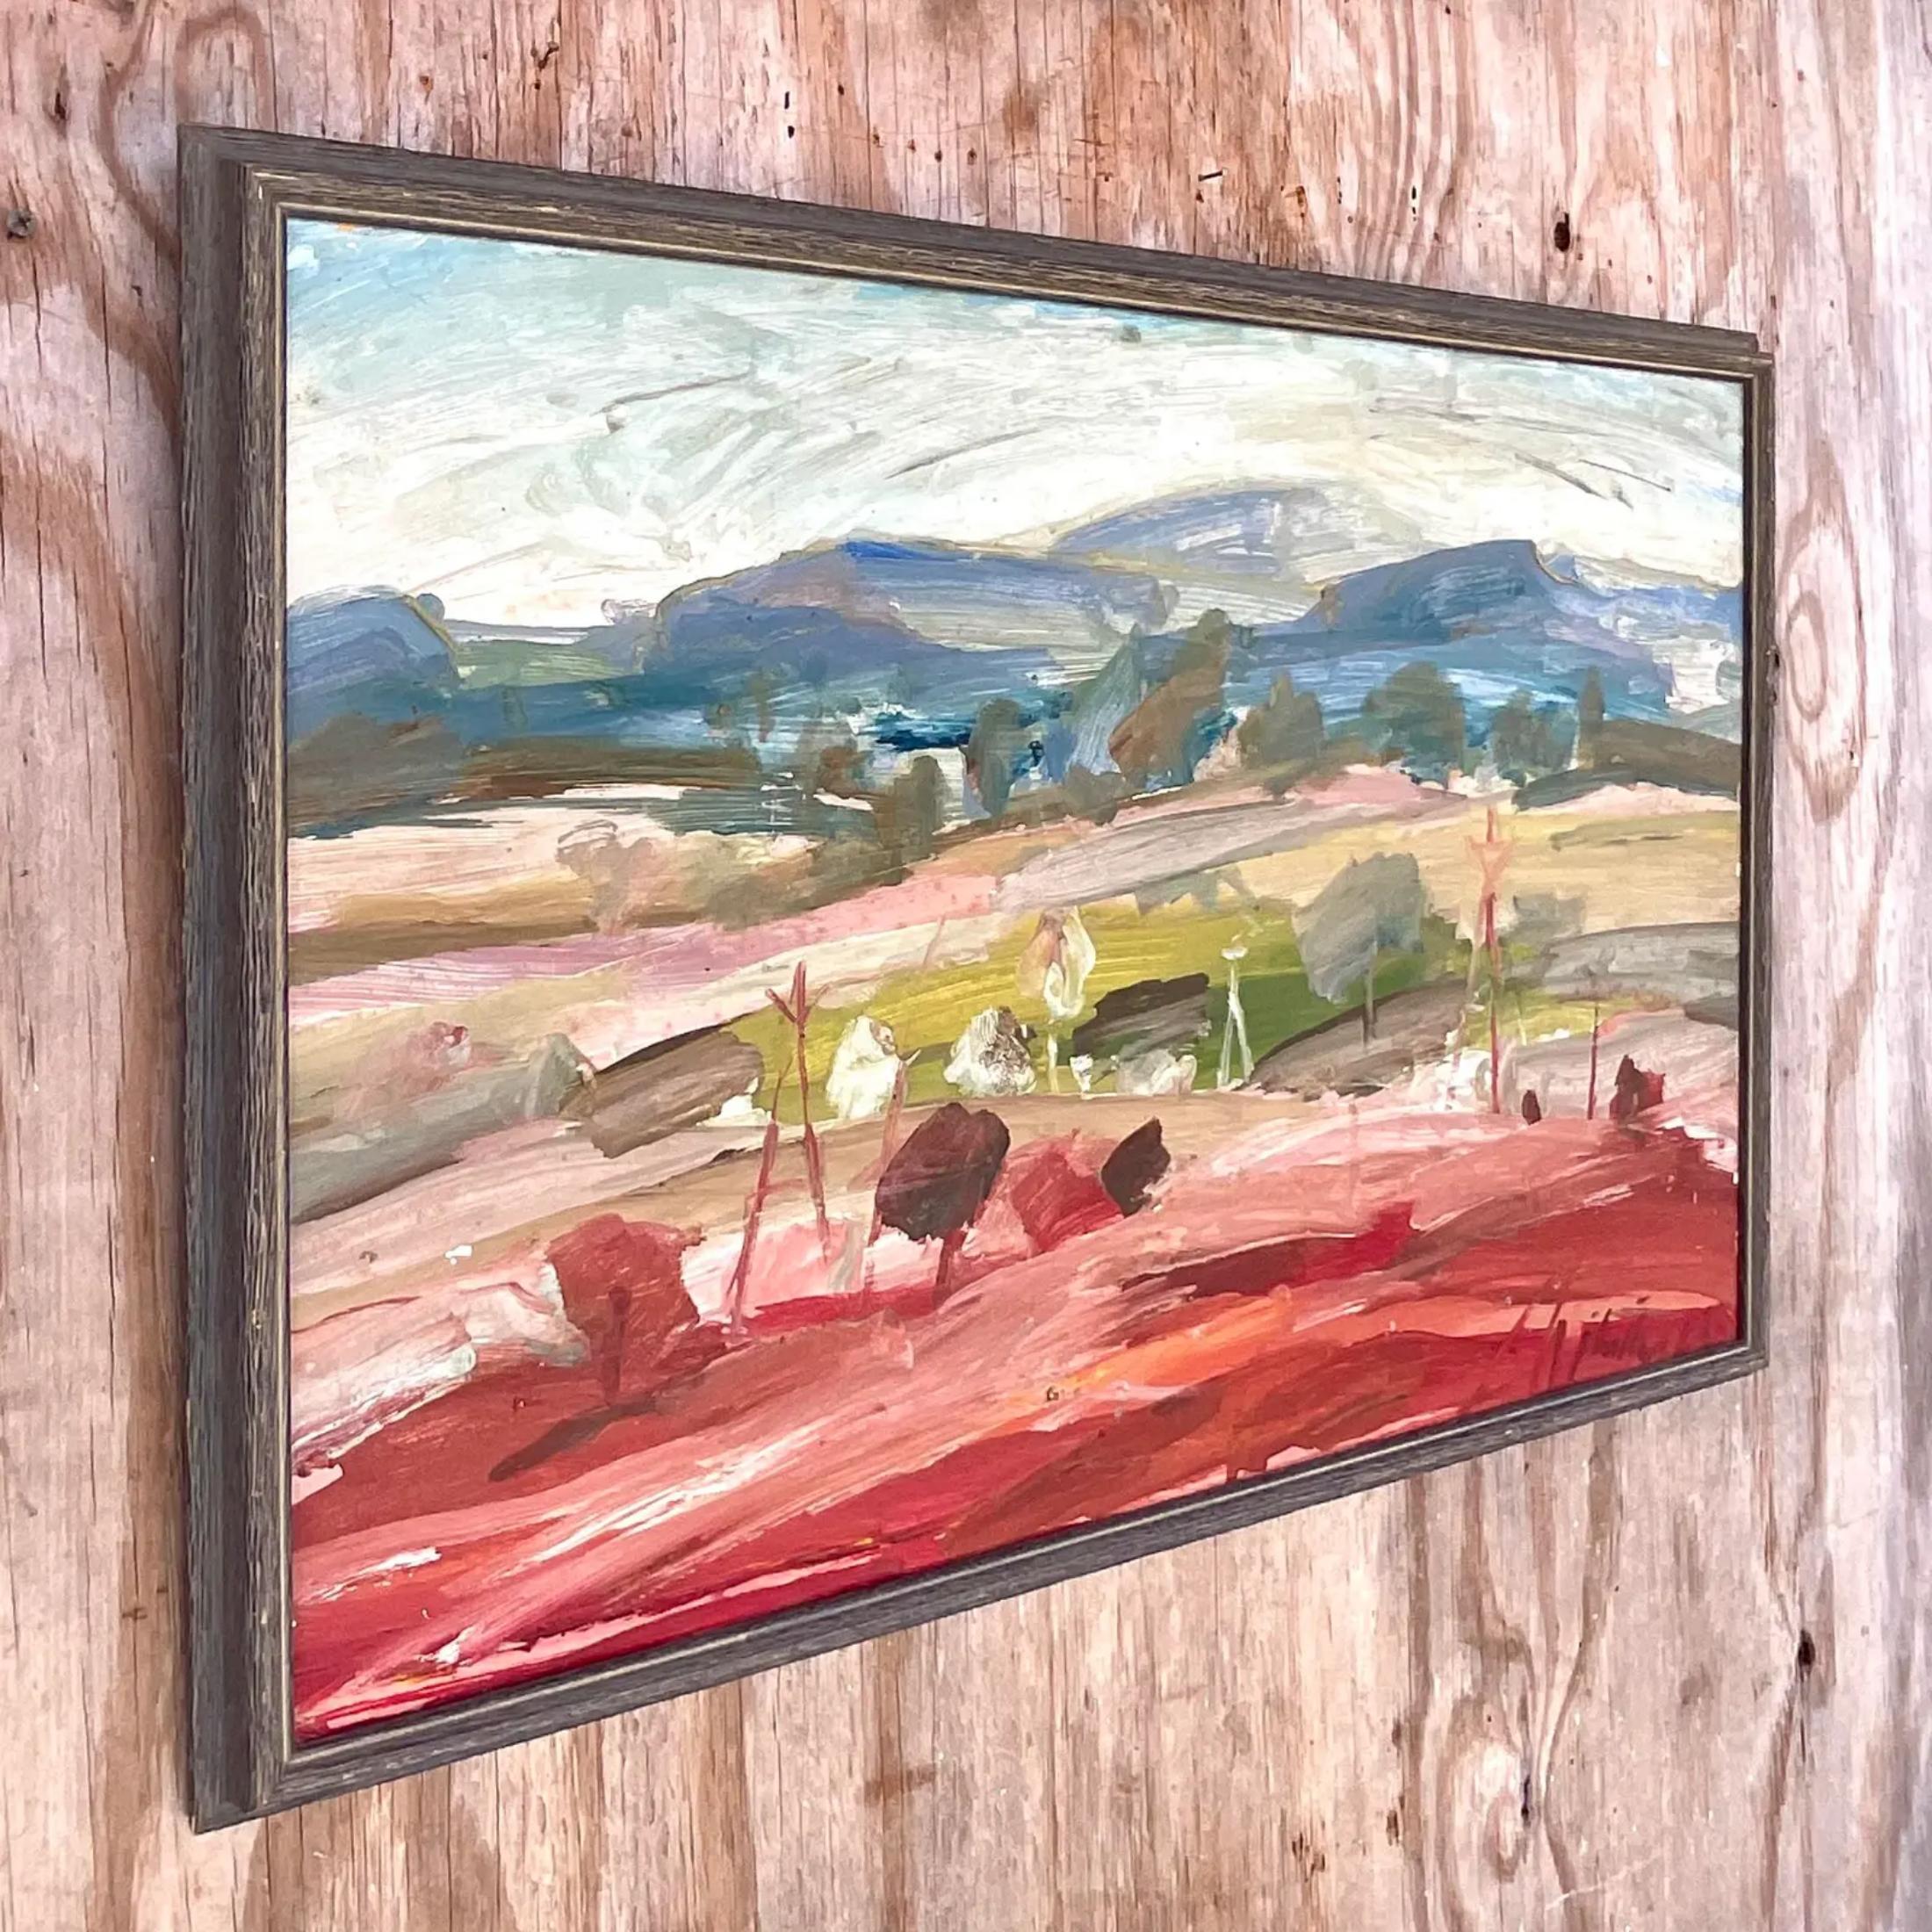 Eine fabelhafte Vintage Boho original Ölgemälde auf Leinwand. Eine schicke abstrakt-expressionistische Landschaft in hellen, klaren Farben. Signiert vom Künstler. Erworben aus einem Nachlass in Palm Beach